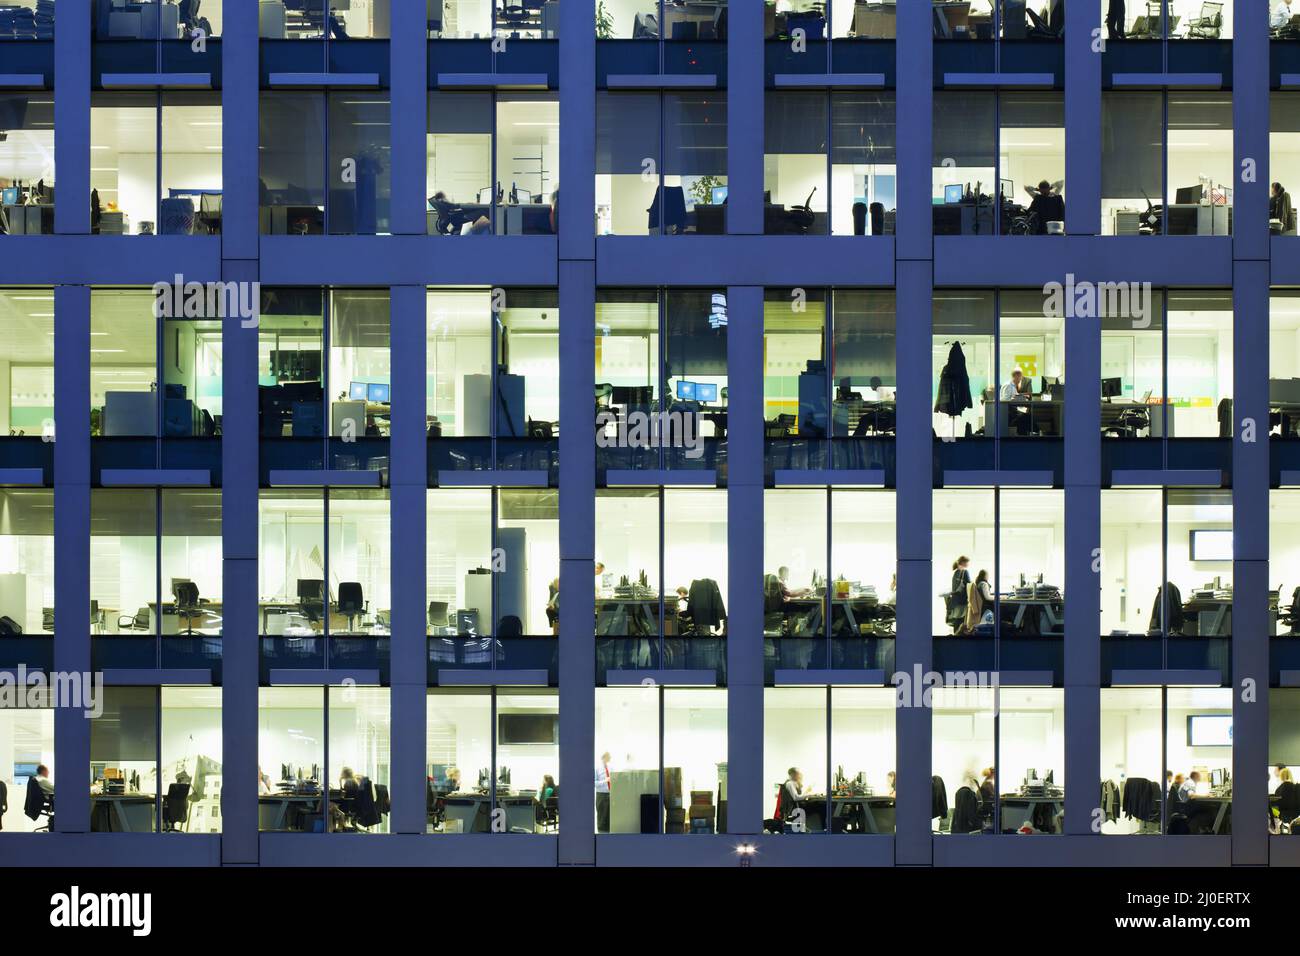 Oficina moderna por la noche, mostrando la actividad diaria de los trabajadores de oficina. Foto de stock